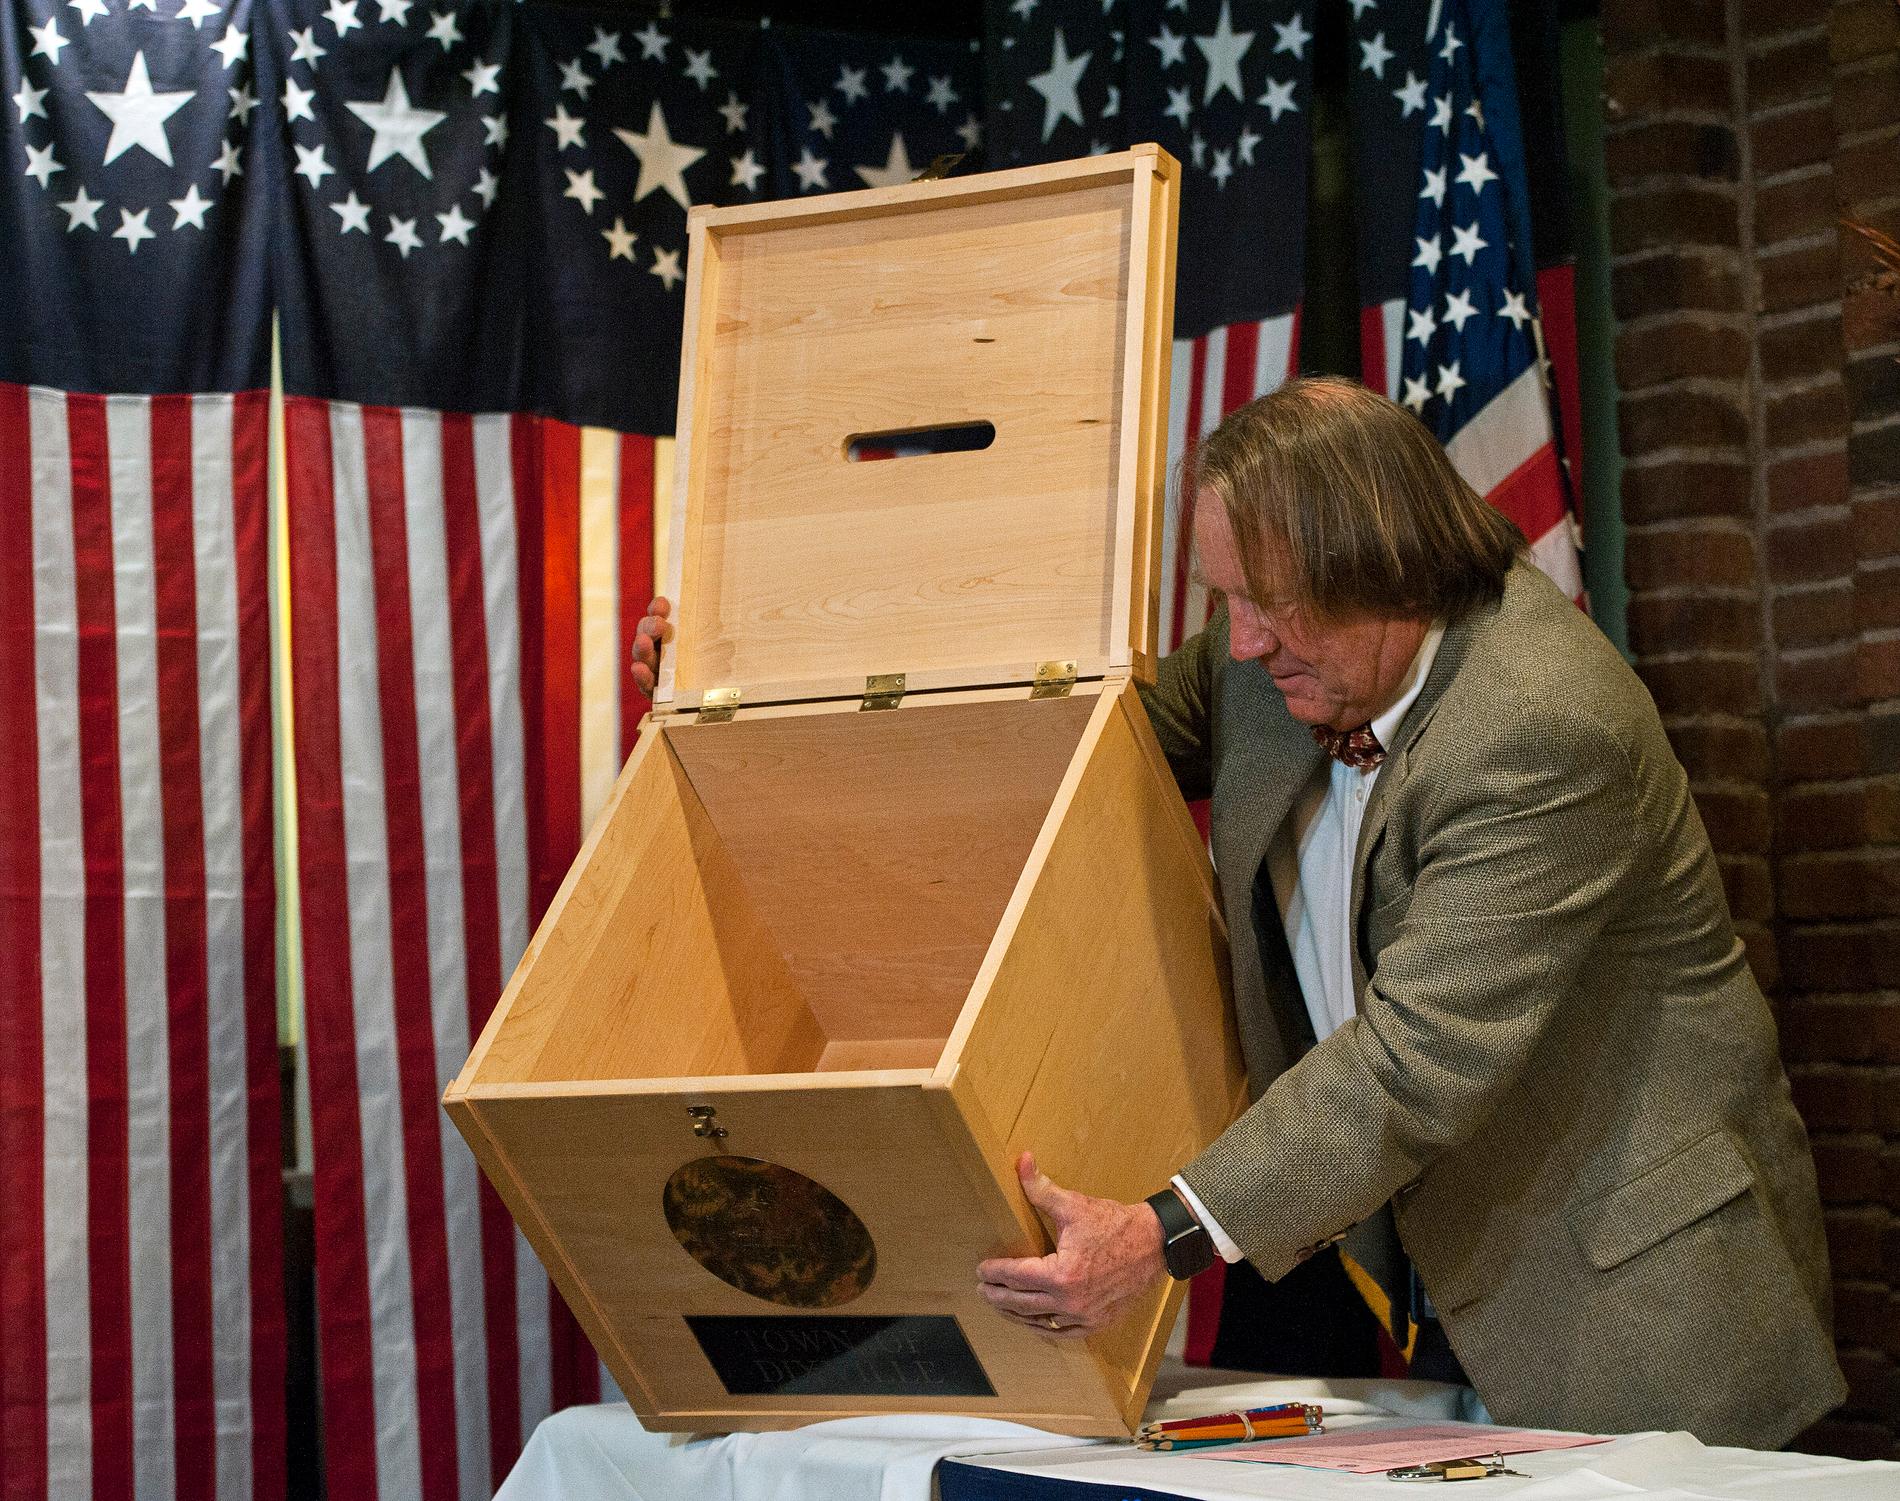 ValförrättarenTom Tillotson visar den tomma urnan strax innan midnattsvalet i Dixville Notch i New Hampshire i USA drar igång.